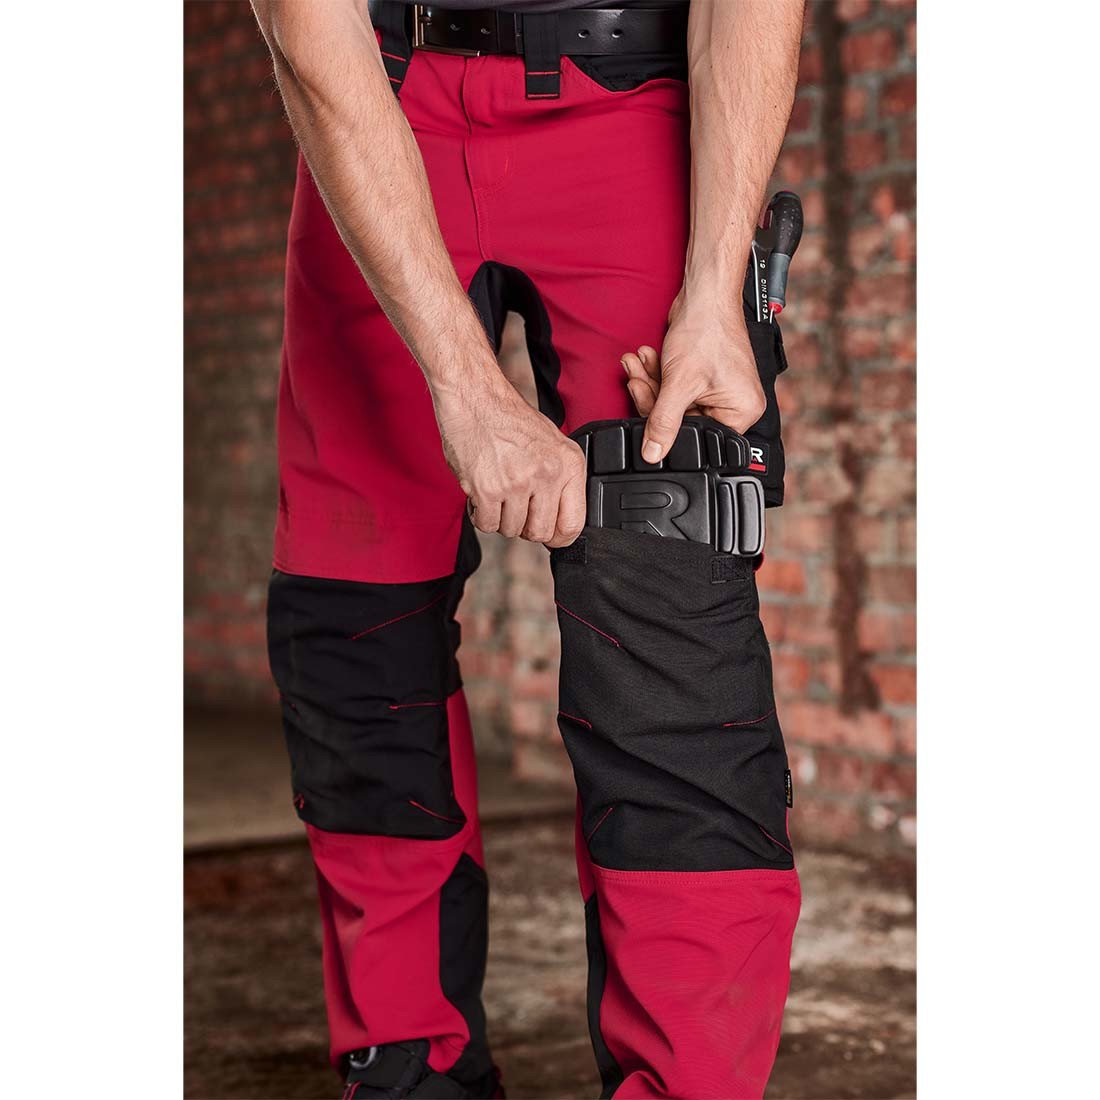 Pantaloni de lucru VERTEX - Imbracaminte de protectie